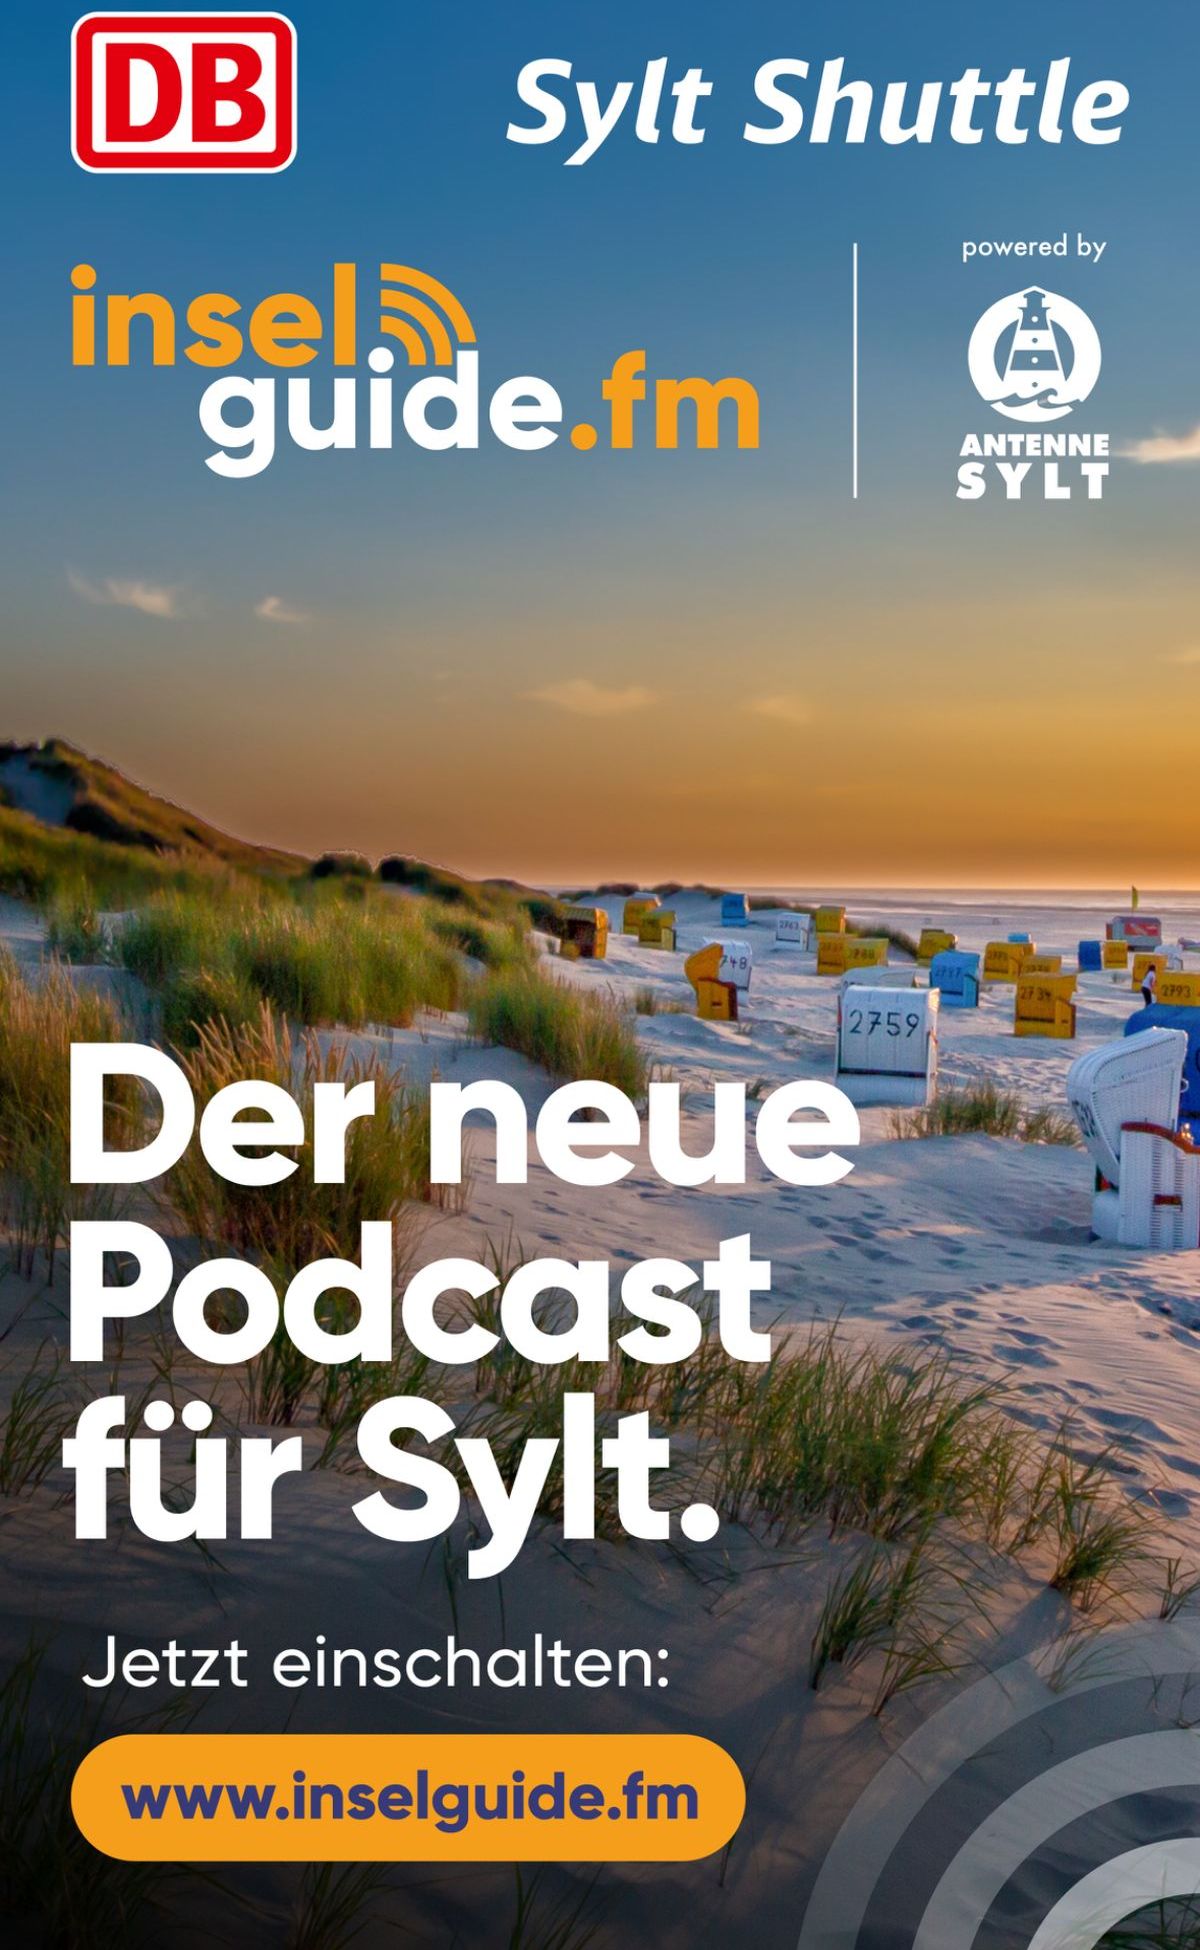 Foto: Der neue Podcast für Sylt.